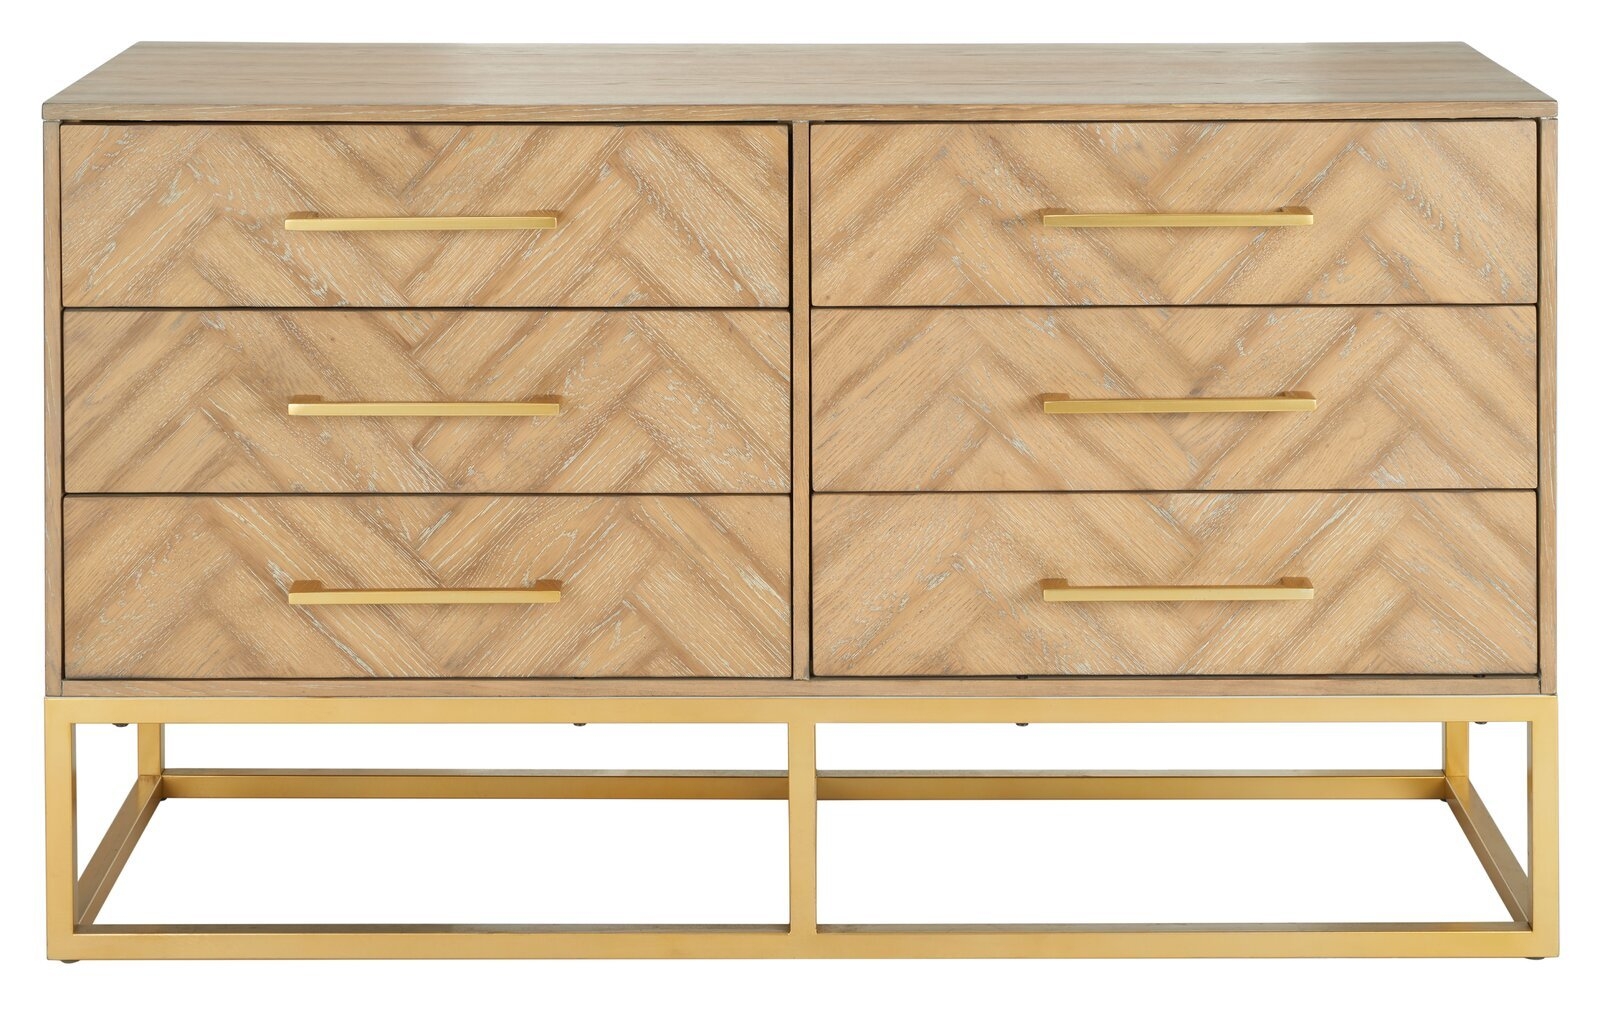 Sheldon 6 Drawer Standard Dresser/Chest- Rustic Oak - Image 0